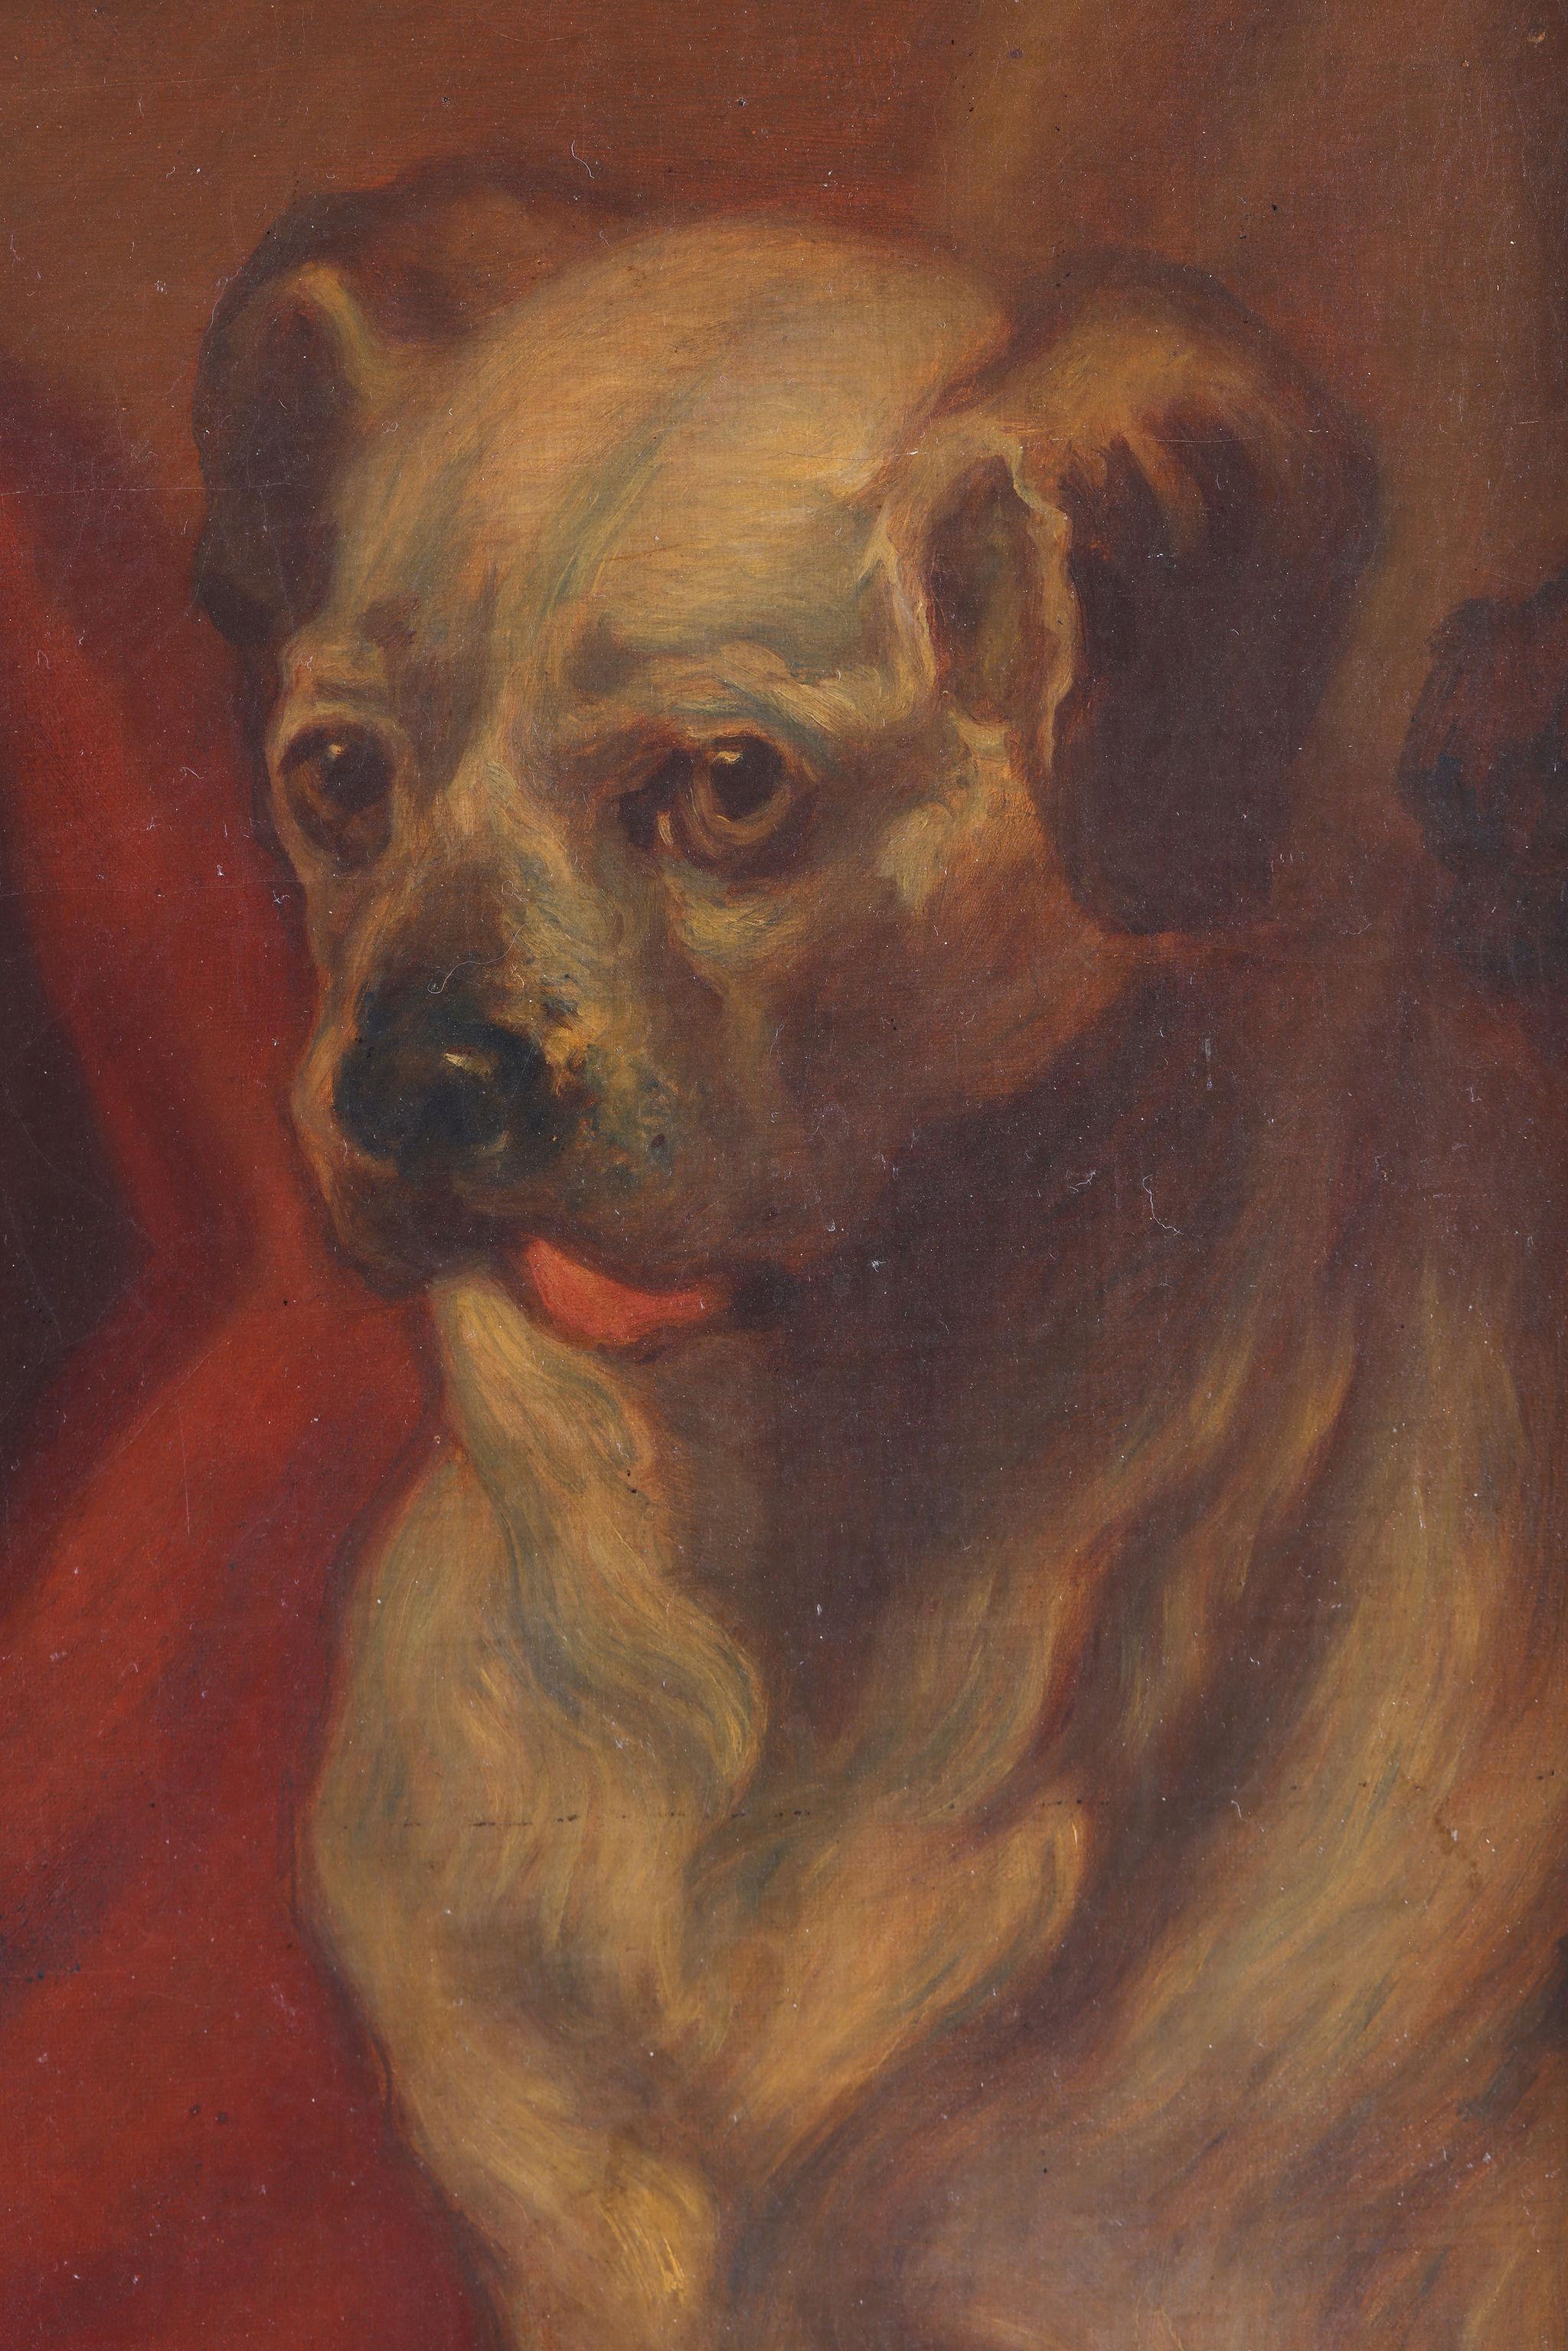 Ein Selbstporträt von William Hogarth mit seinem Hund, genannt Trump.
Ein Bild von fantastischer Qualität, das möglicherweise aus Hogarths ursprünglicher Kunstschule stammt.
Dieses Stück ist betitelt, datiert und mit einem Monogramm versehen.
Es